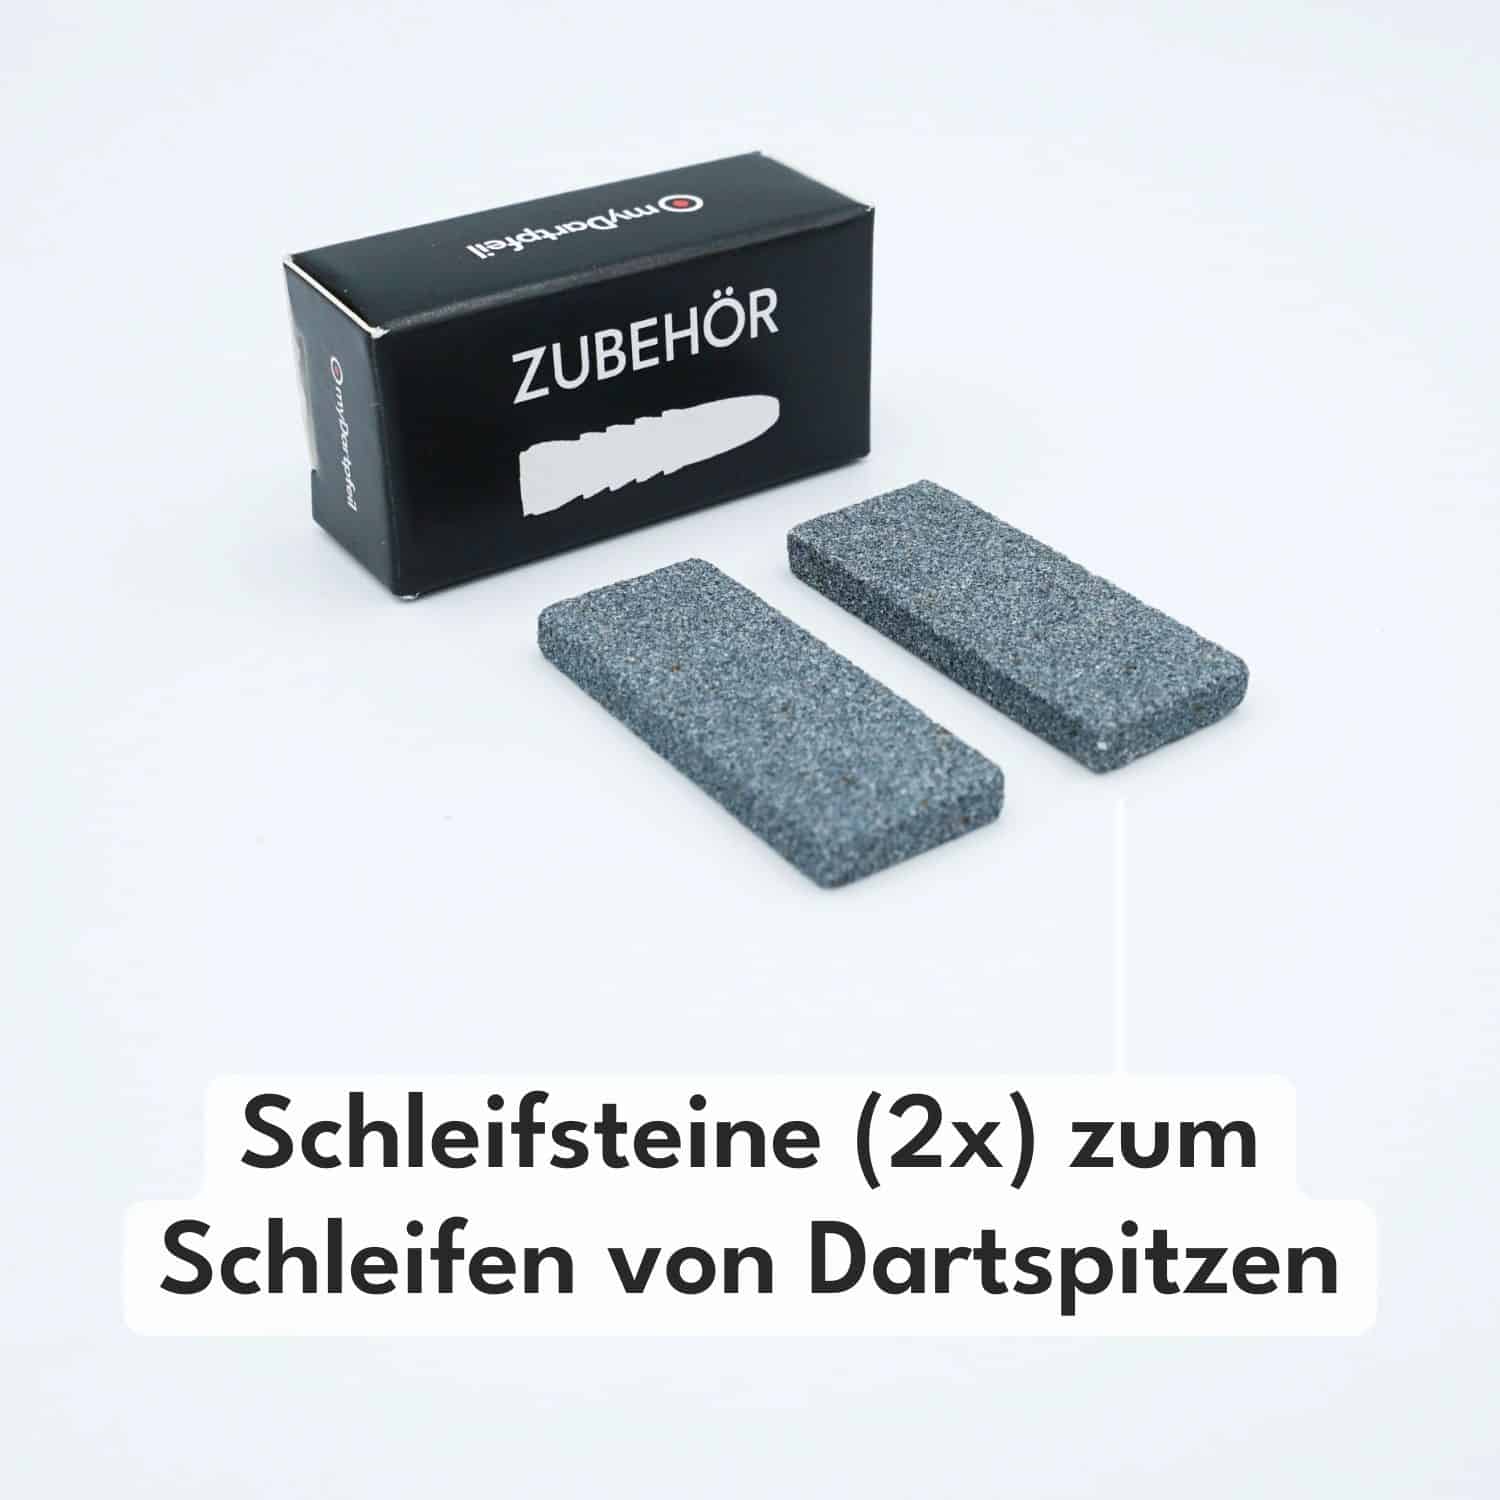 Darts Schleifsteine - Dart Sharpener zum Dartspitzen schleifen (2 Stk.)